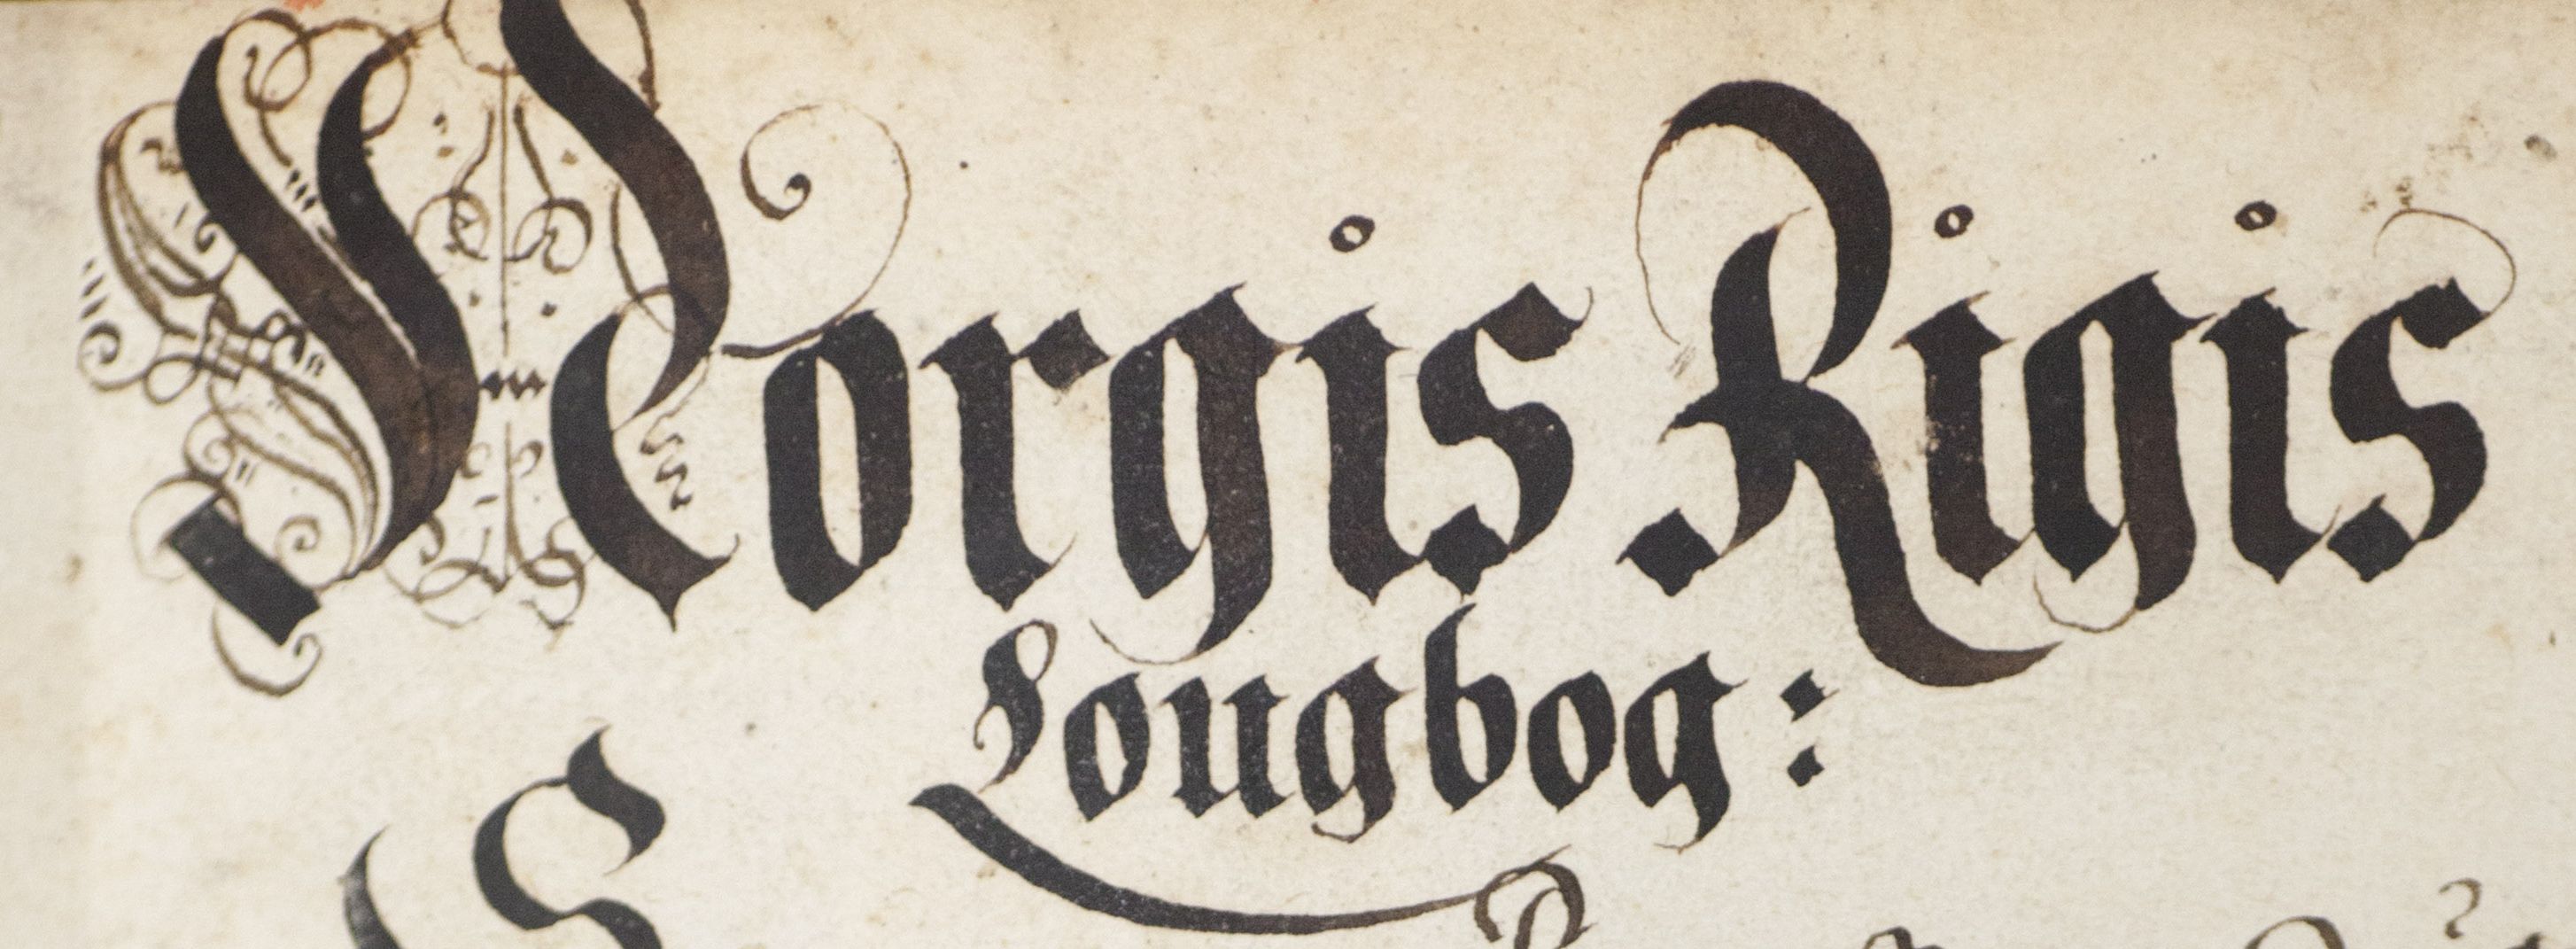 Banner - Norgis Riiges Lougbog